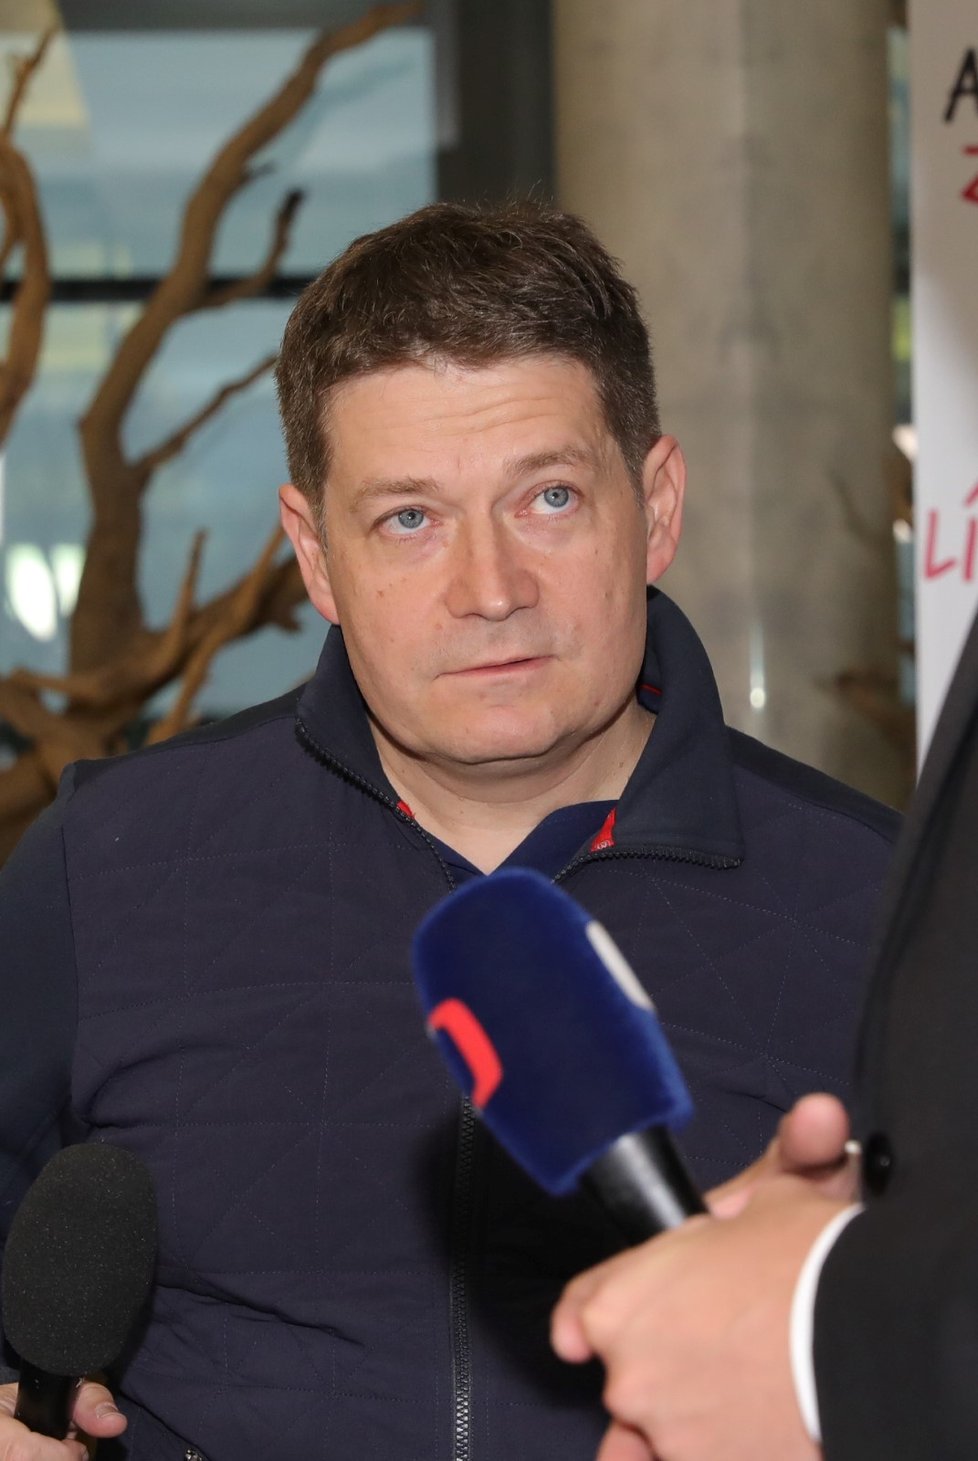 Lídr pražské kandidátky ANO Patrik Nacher přijel do volebního štábu ANO.